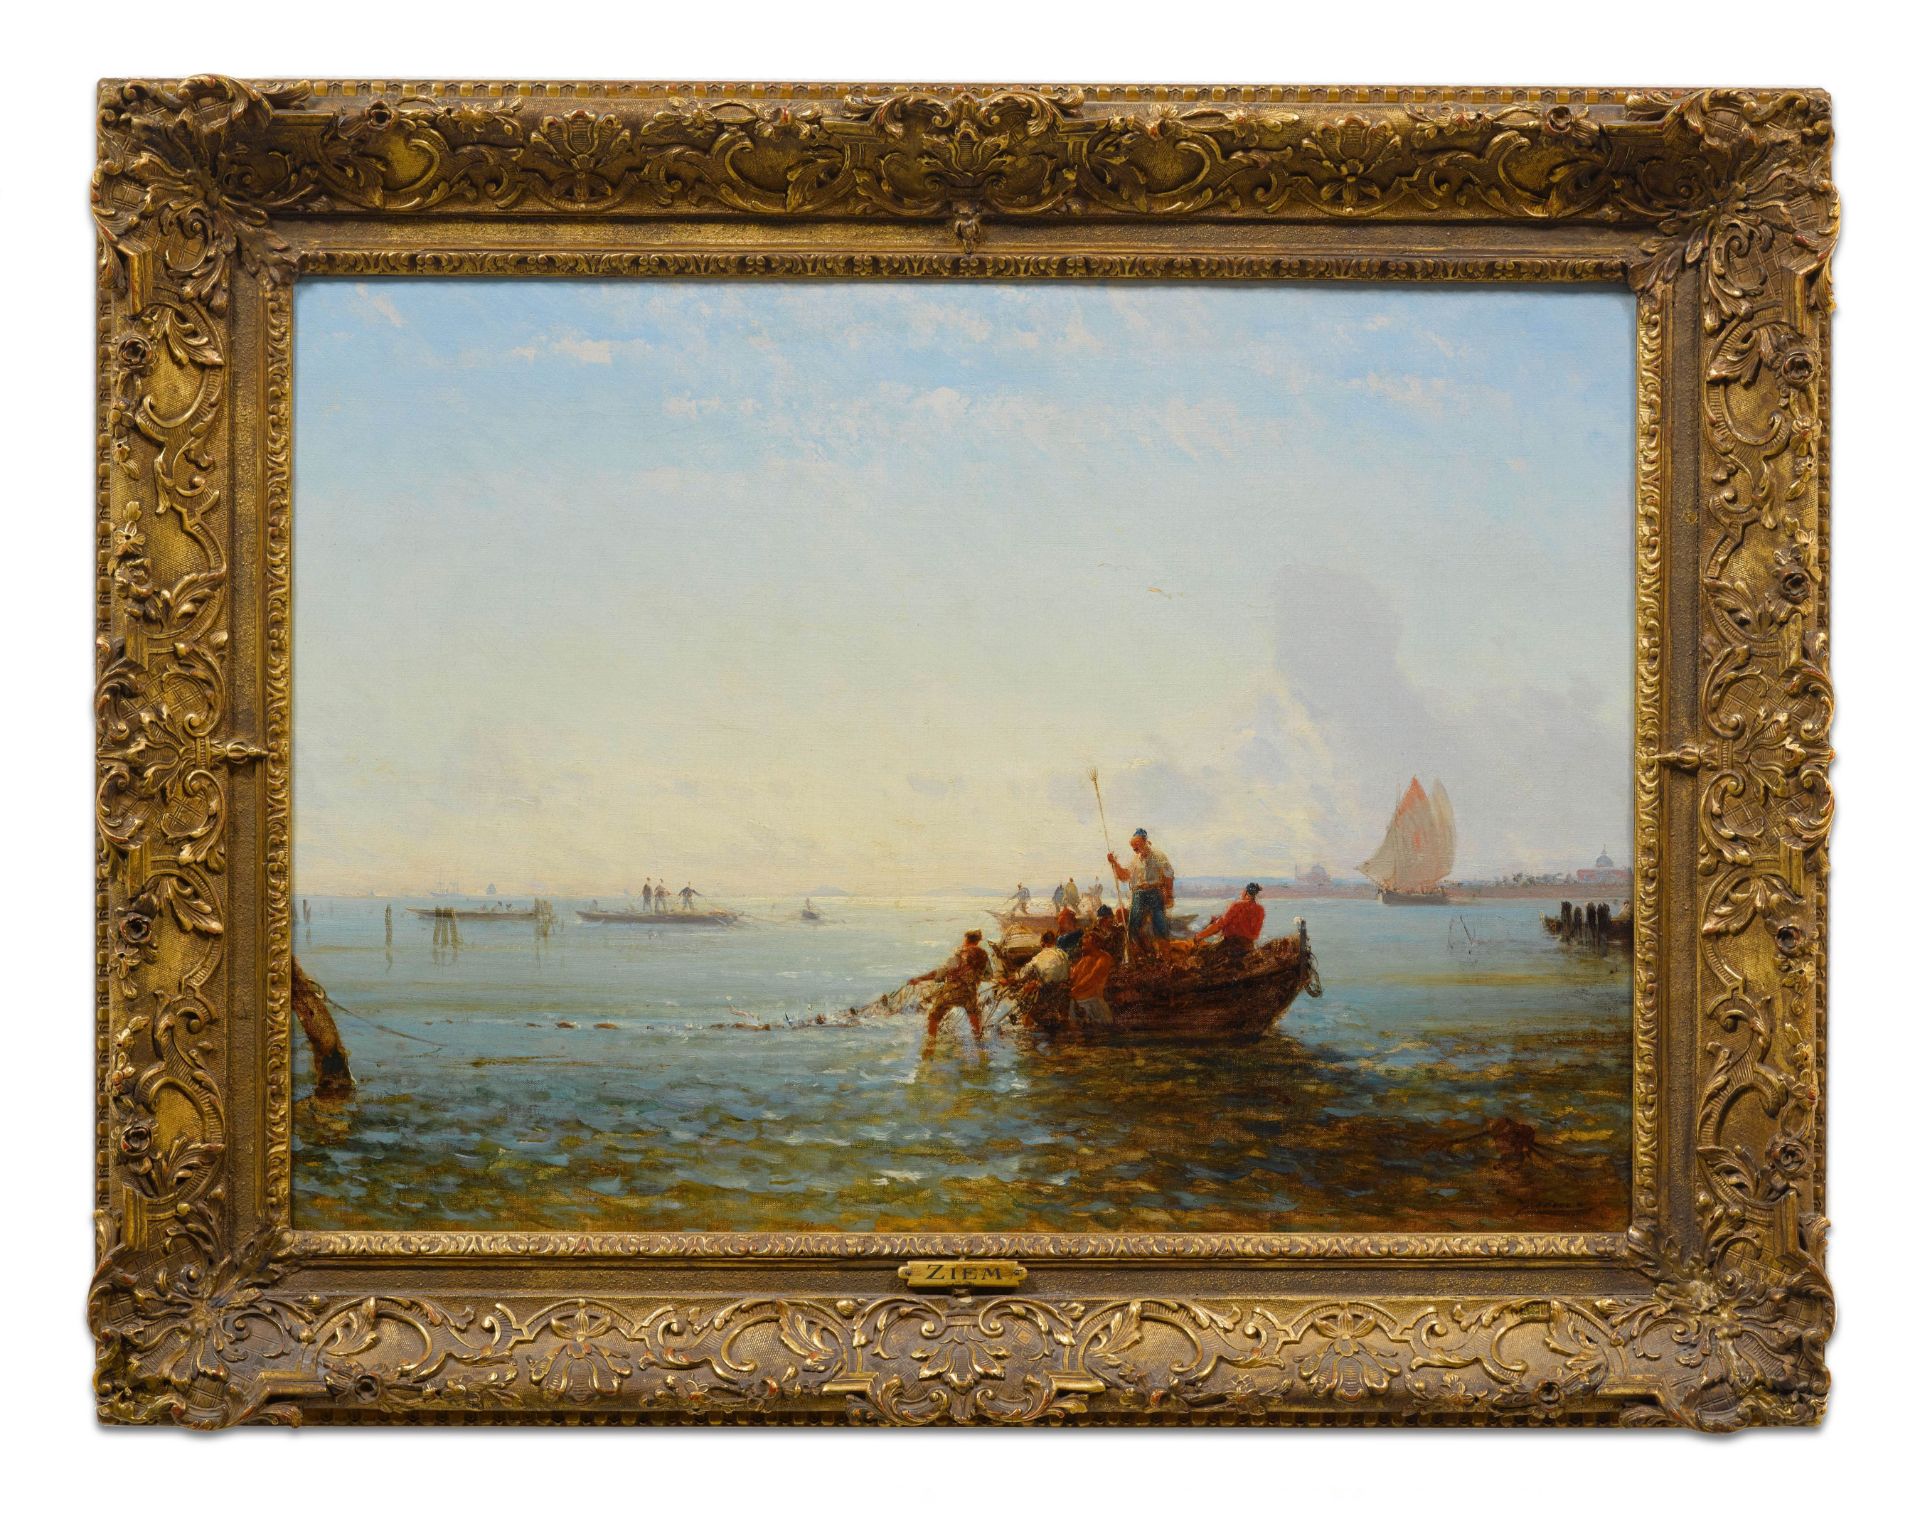 FÉLIX FRANÇOIS ZIEM(Beaune 1821–1911 Paris)Venise - pêcheurs tirant leurs filets.Öl auf Leinwand. - Image 2 of 2